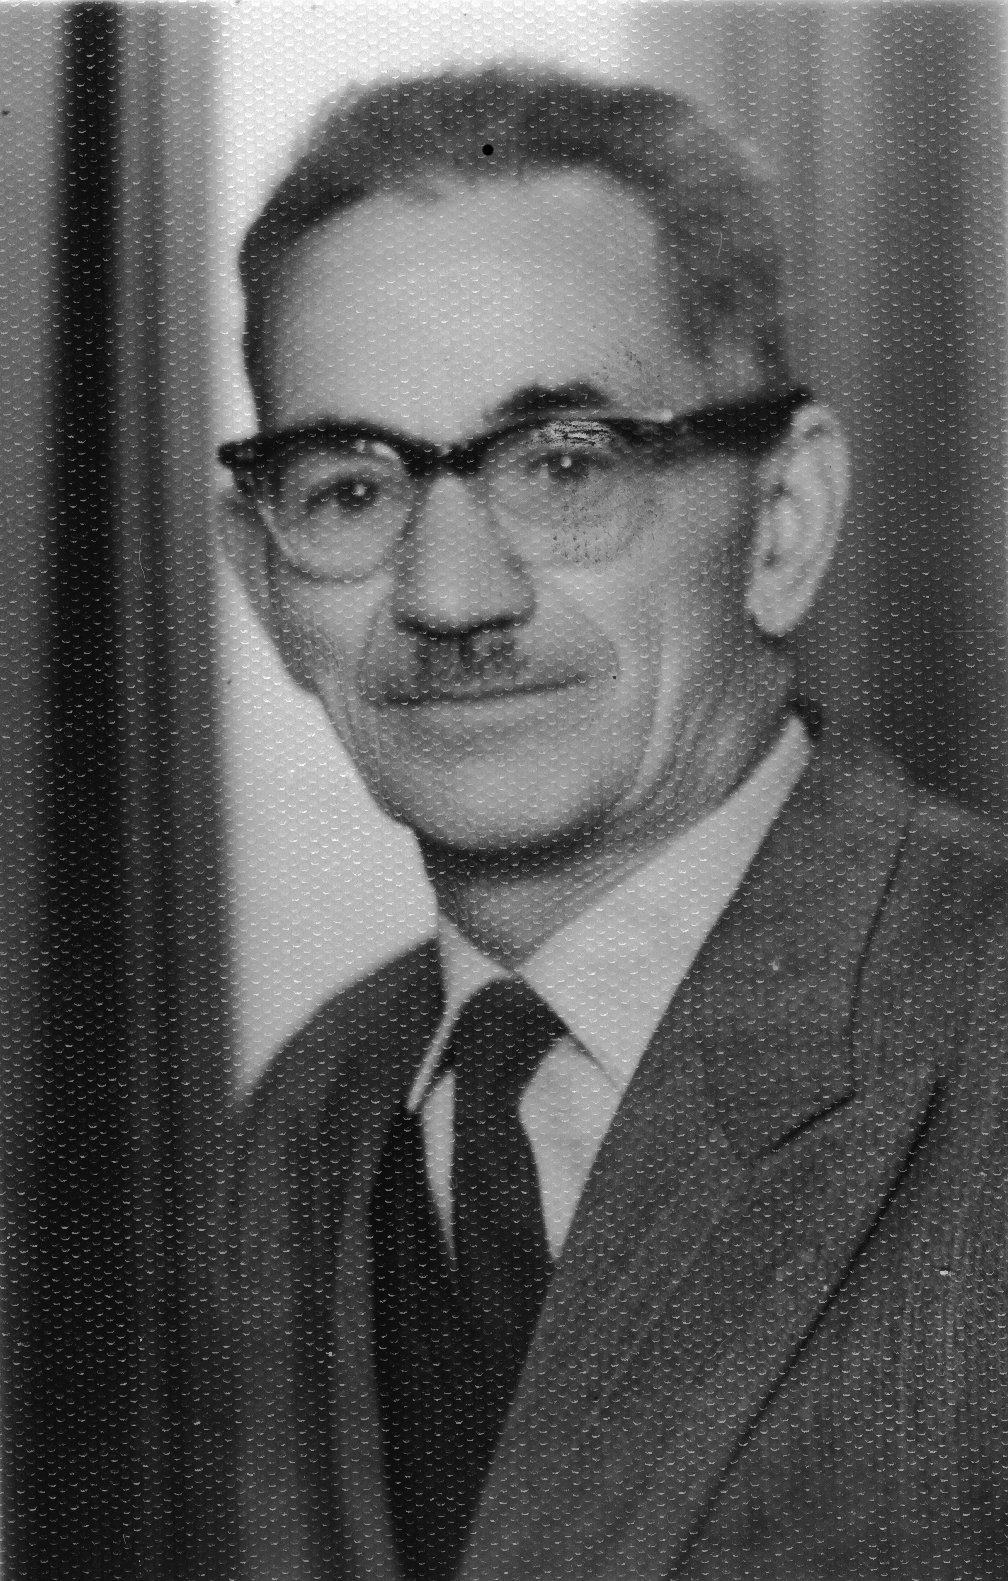 Yosef Weitz, 1890-1972